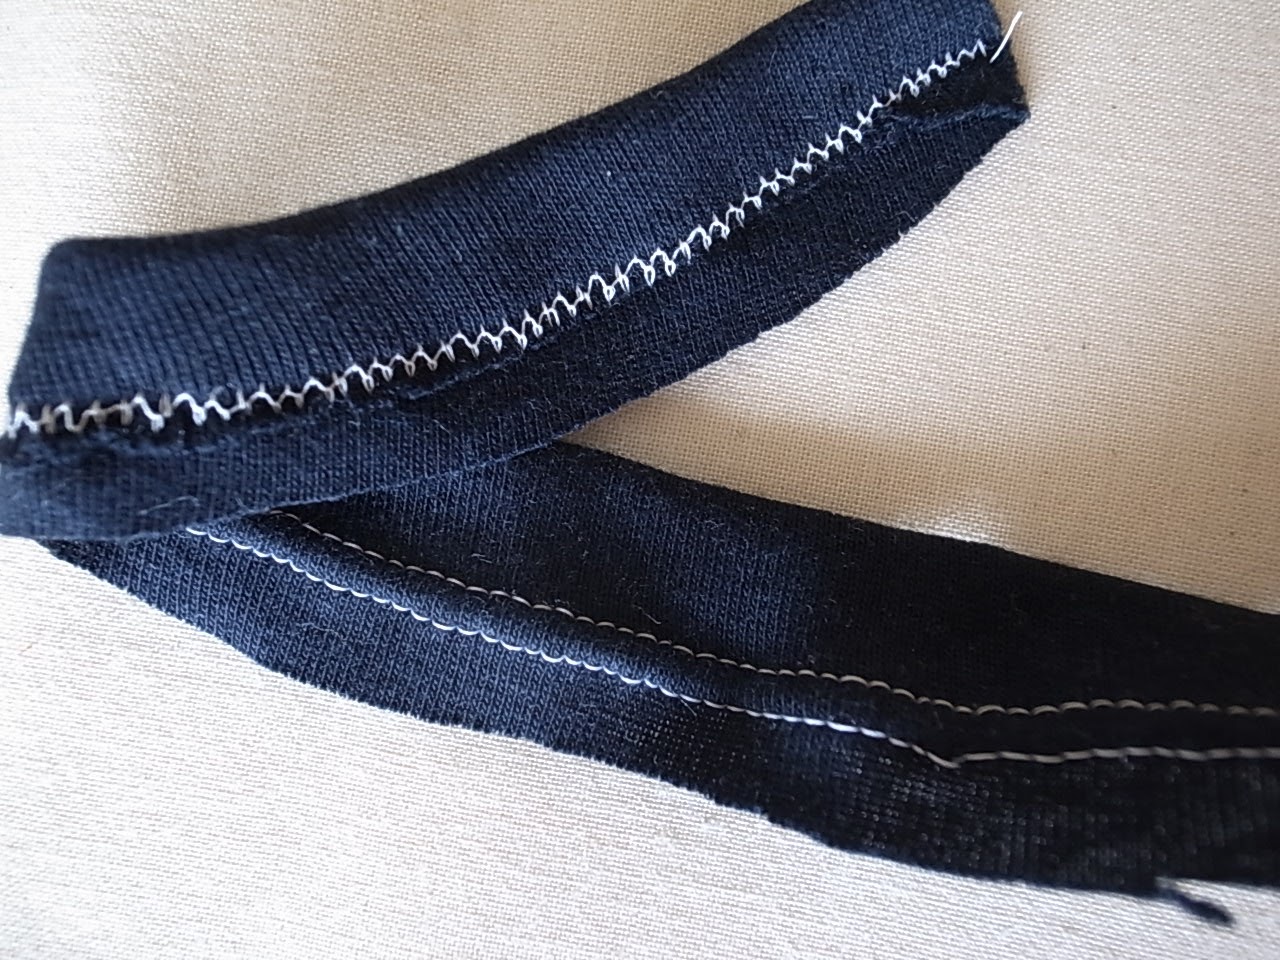 ミシンのハナシ2: Knit 9 カバーステッチがない場合のニットの裾処理